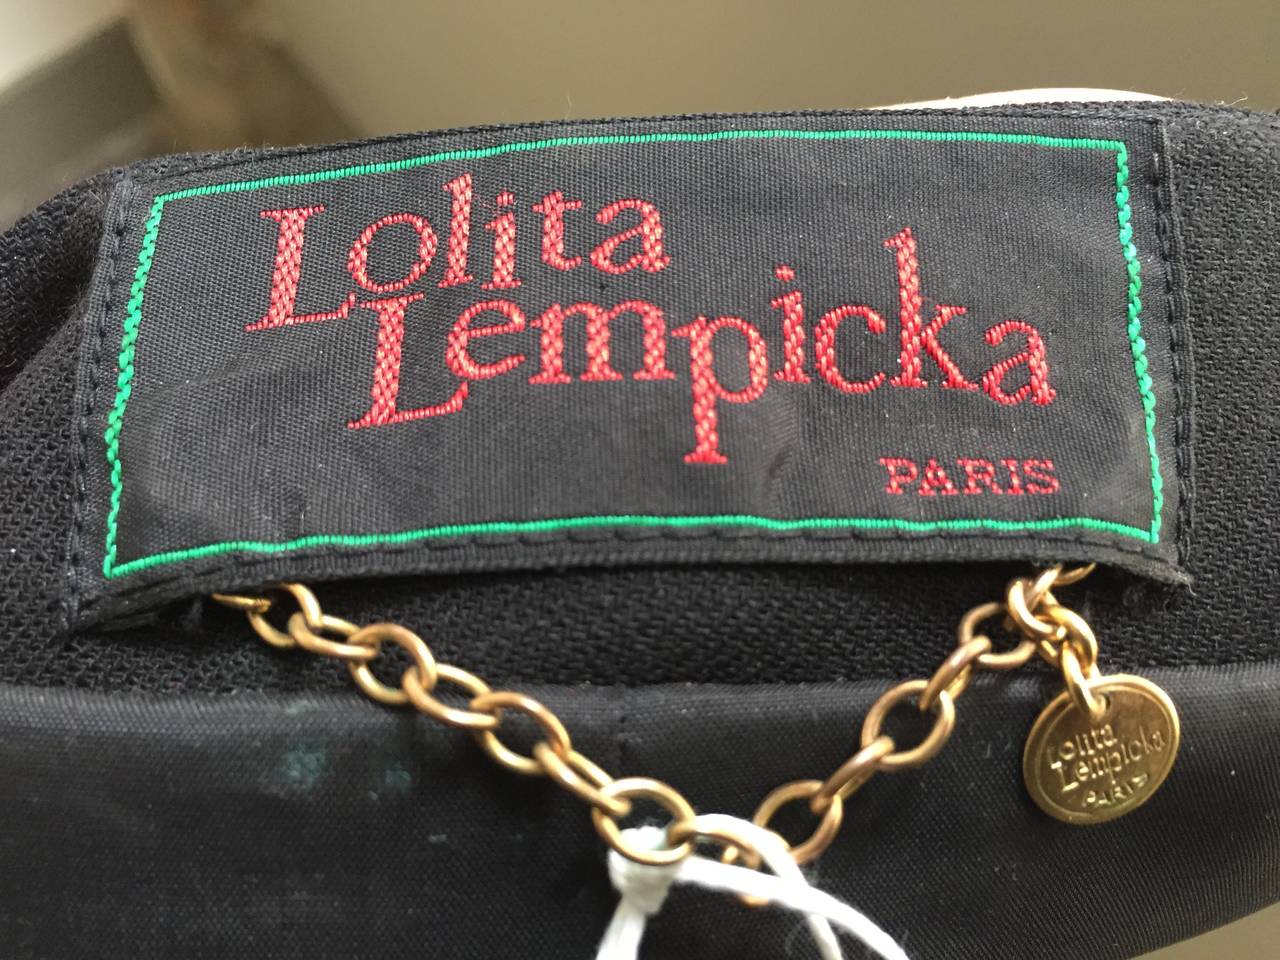 Lolita Lempicka Paris 80s black skirt suit size 4. 5